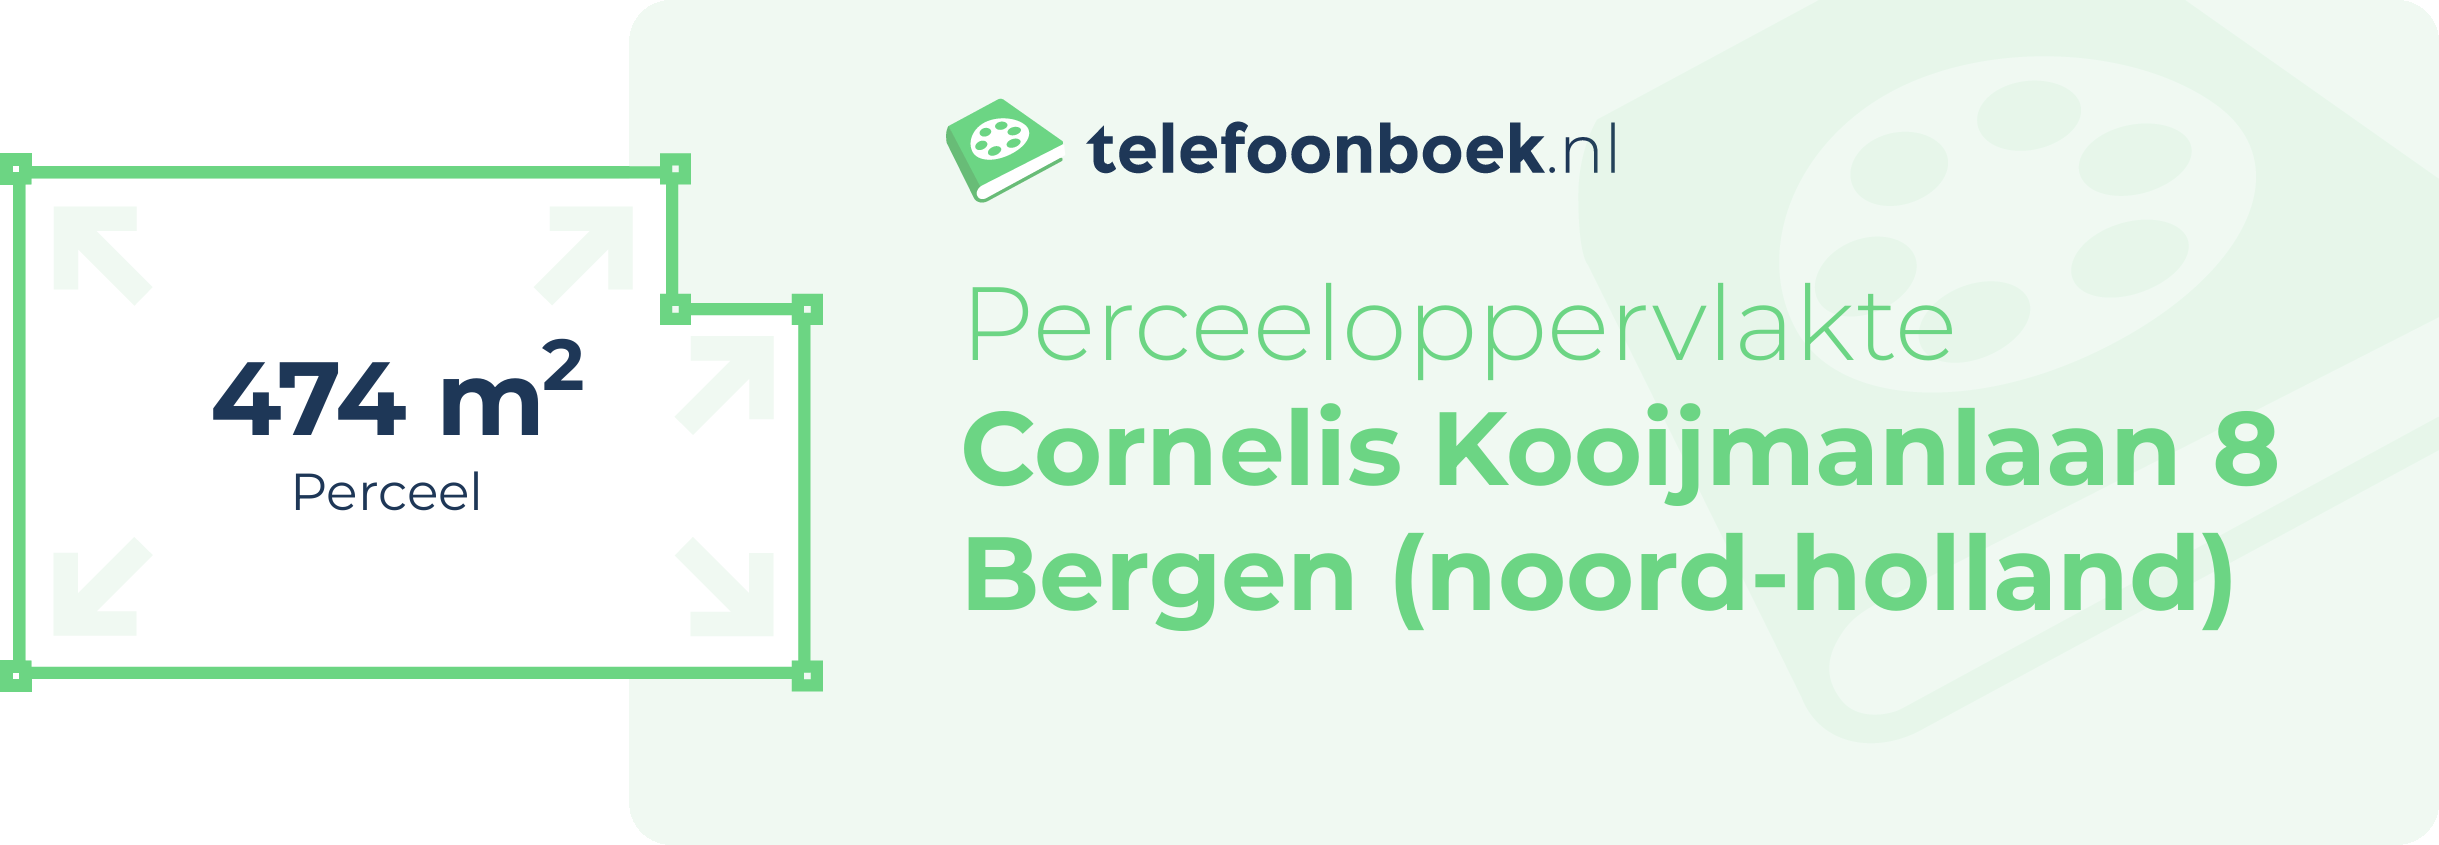 Perceeloppervlakte Cornelis Kooijmanlaan 8 Bergen (Noord-Holland)